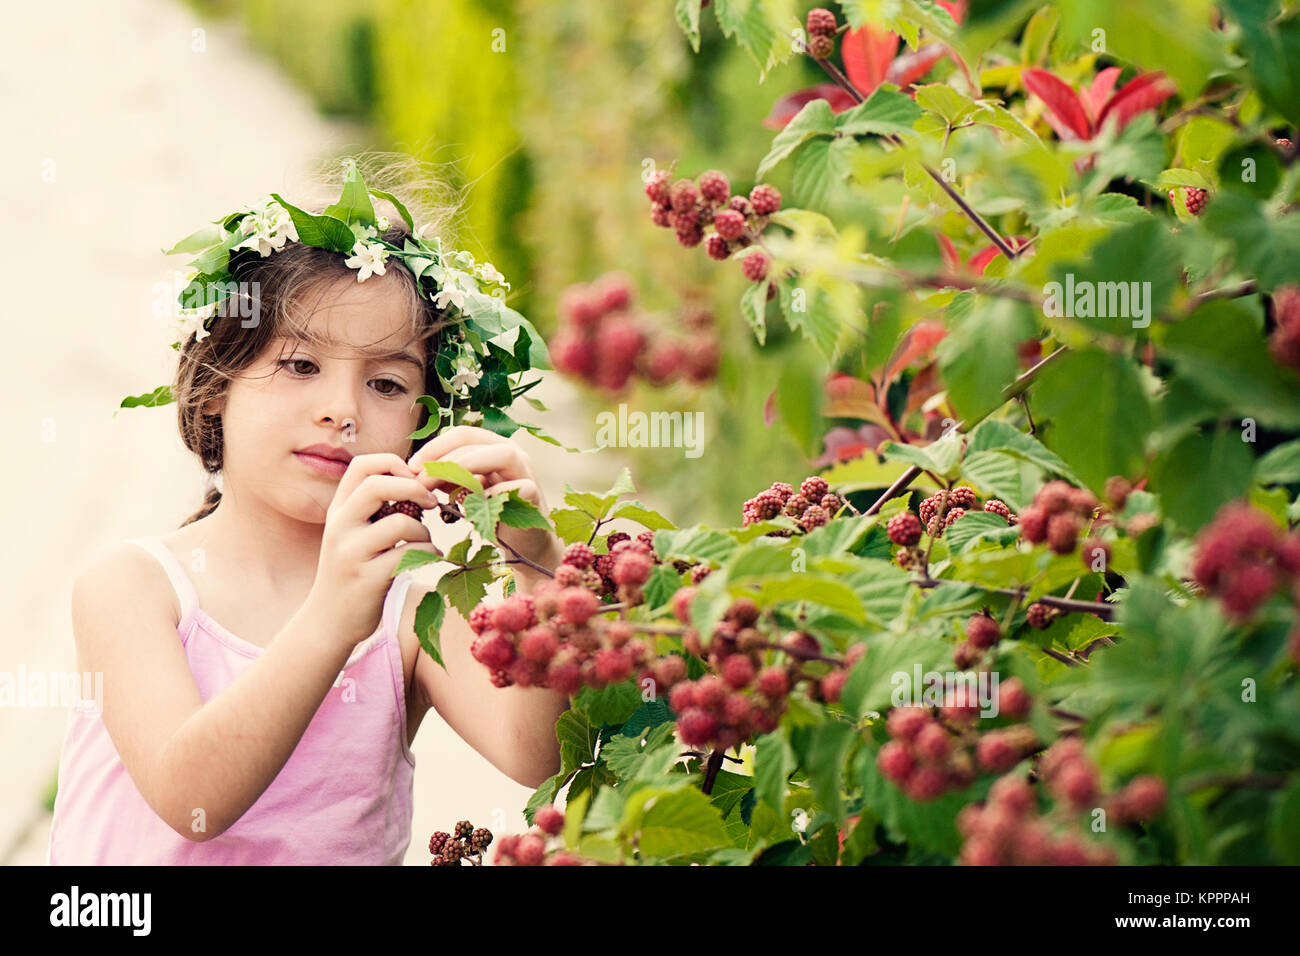 Enfant avec la couronne de fleurs cueillir des baies Banque D'Images